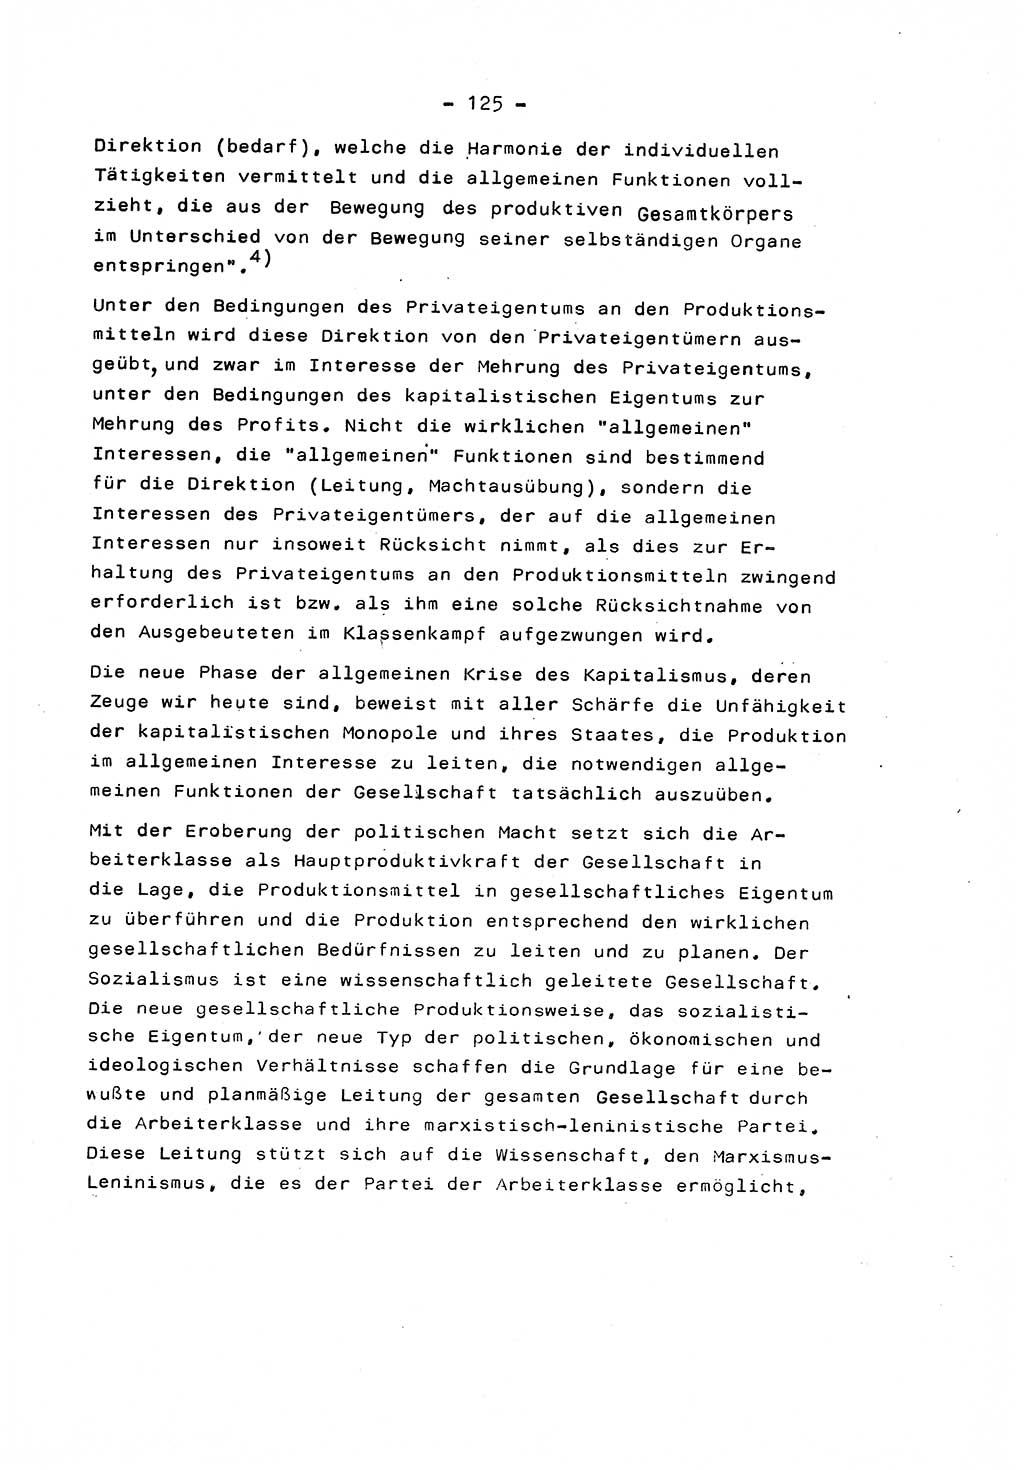 Marxistisch-leninistische Staats- und Rechtstheorie [Deutsche Demokratische Republik (DDR)] 1975, Seite 125 (ML St.-R.-Th. DDR 1975, S. 125)